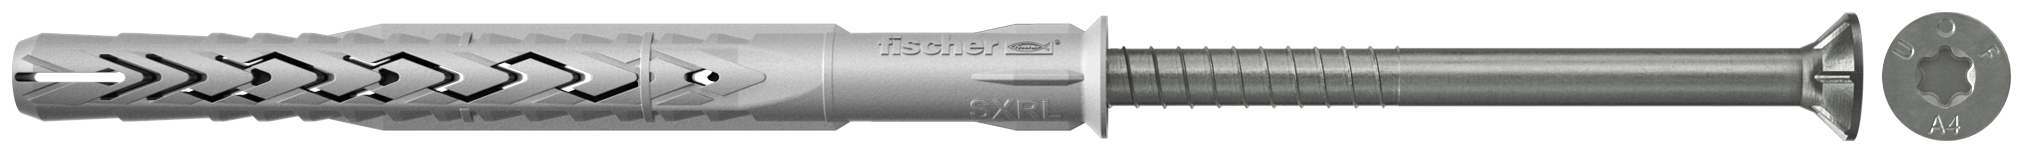 fischer Tasselli prolungati SXRL 8x60 T A4 (1 Pz.) Tassello prolungato in nylon con marcatura CE con vite premontata in acciaio inox A4, T.S.P. impronta torx.